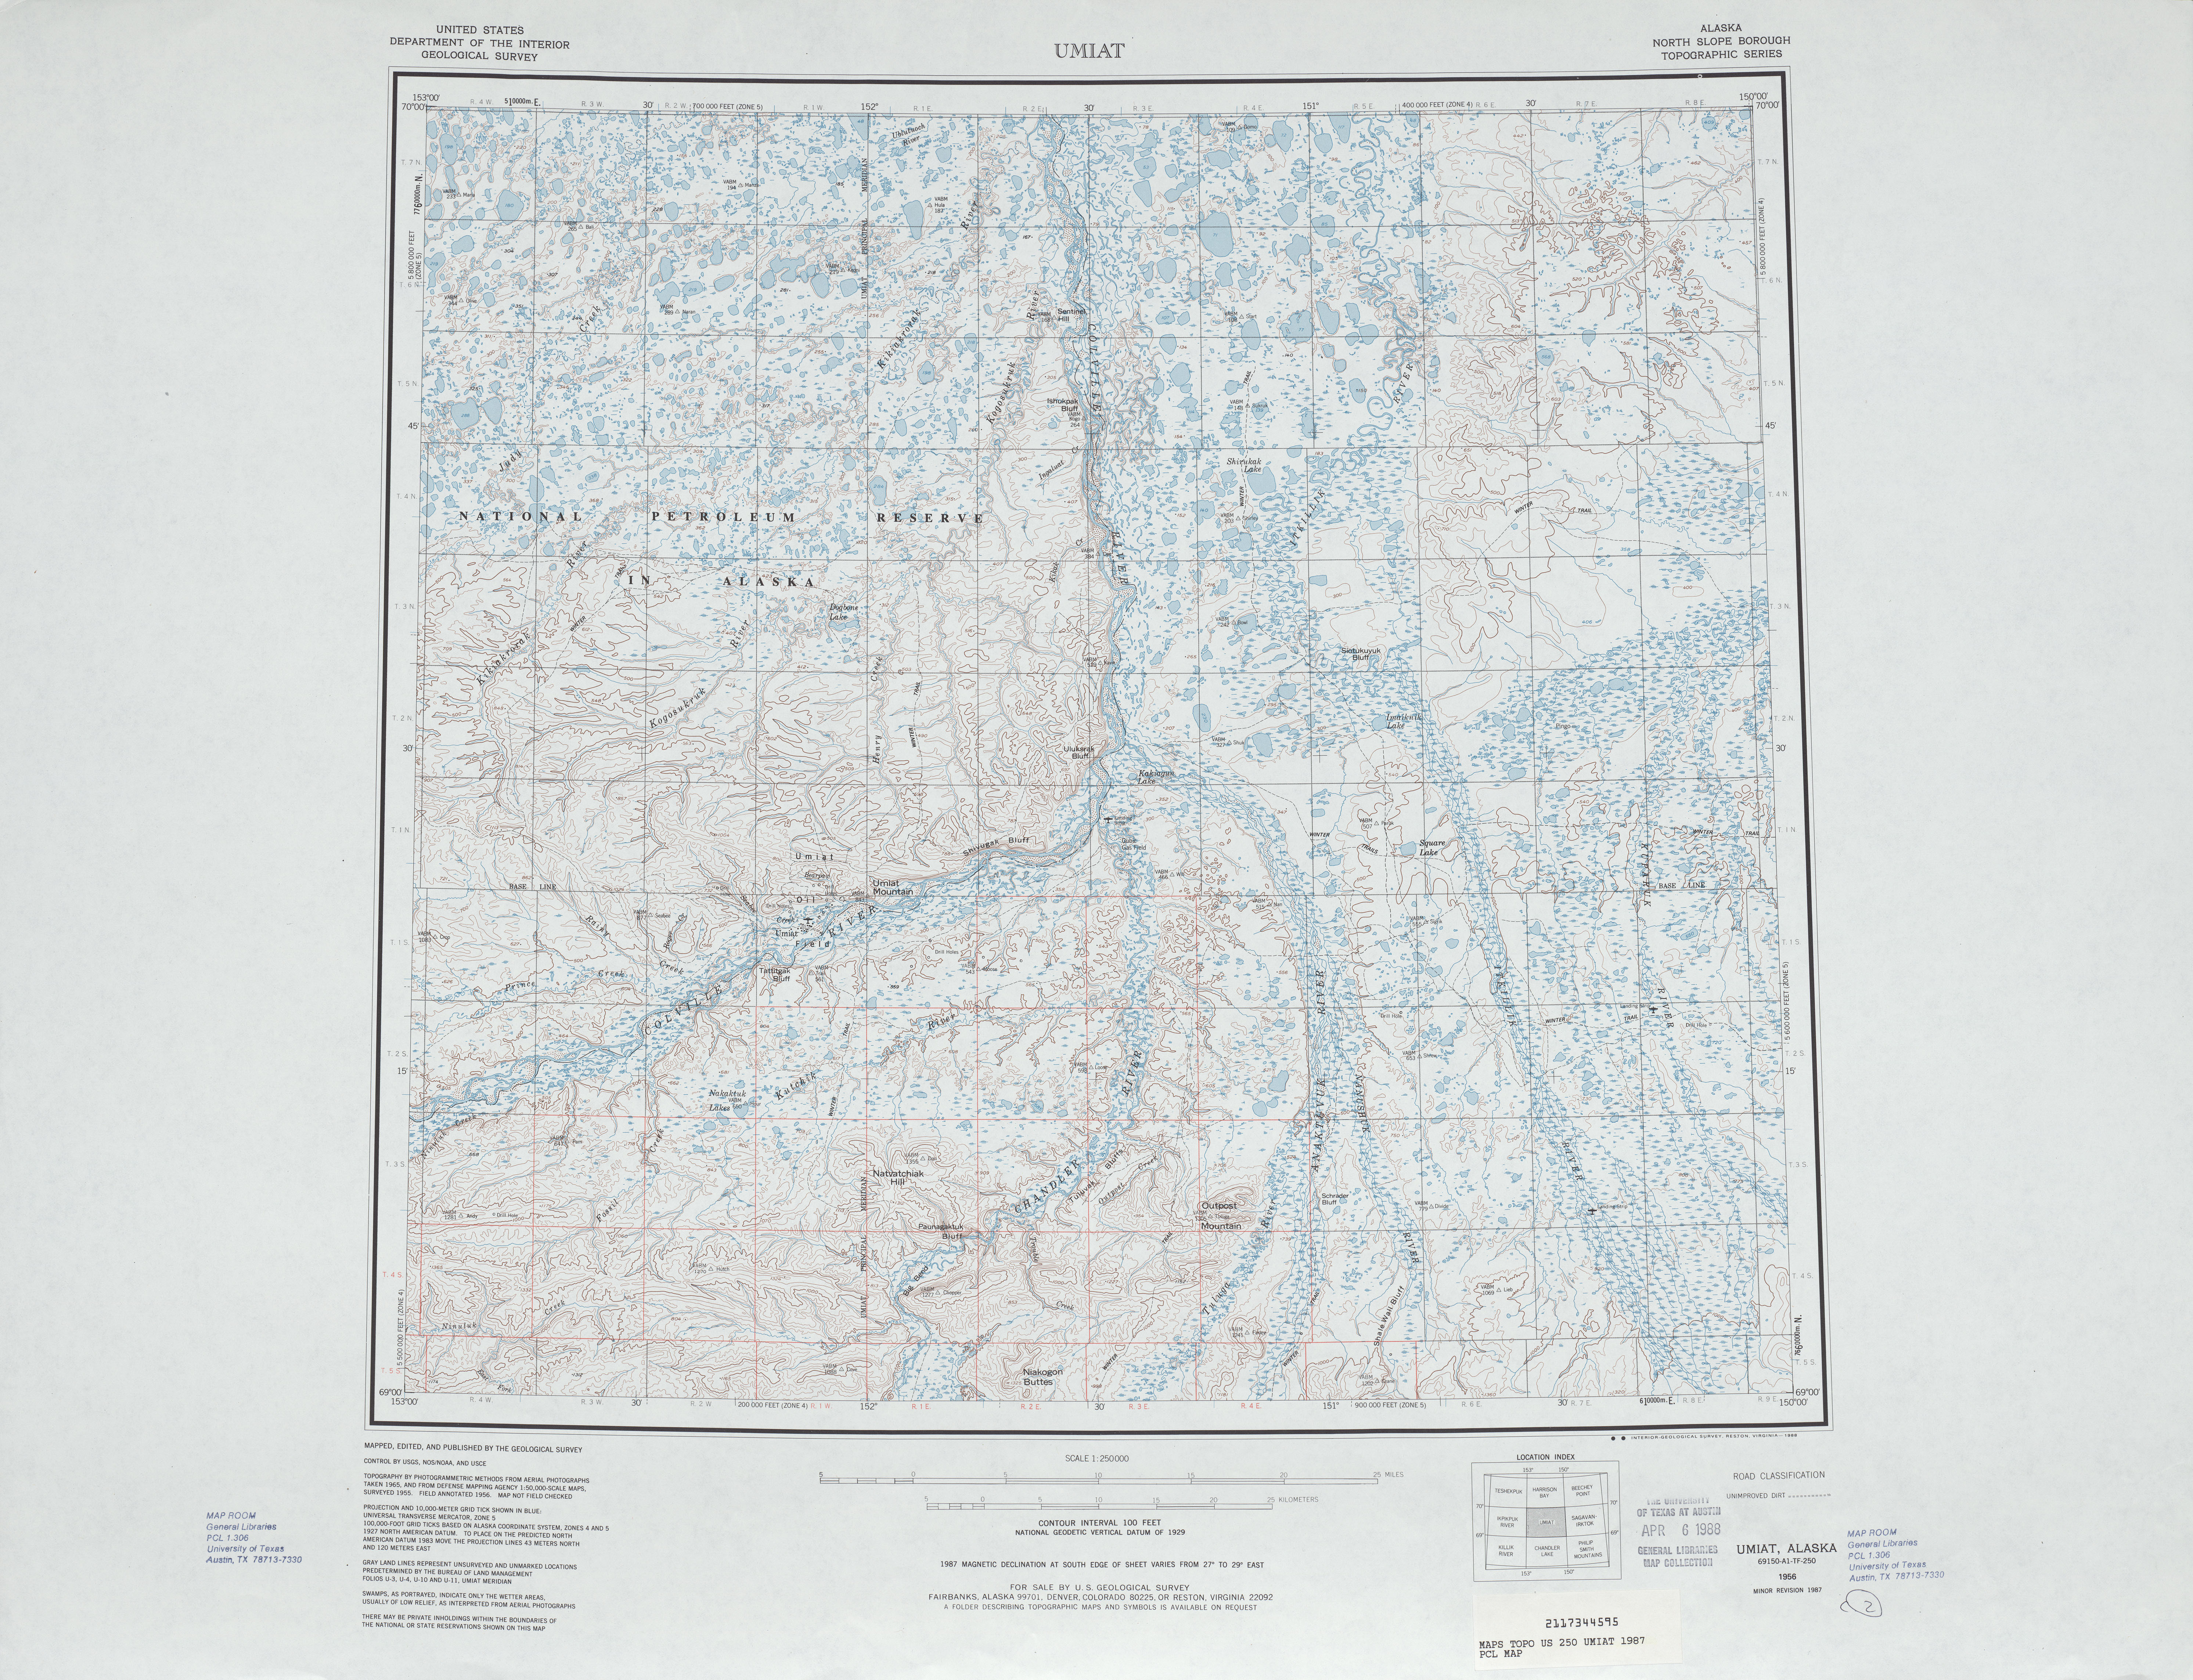 Hoja Umiat del Mapa Topográfico de los Estados Unidos 1987